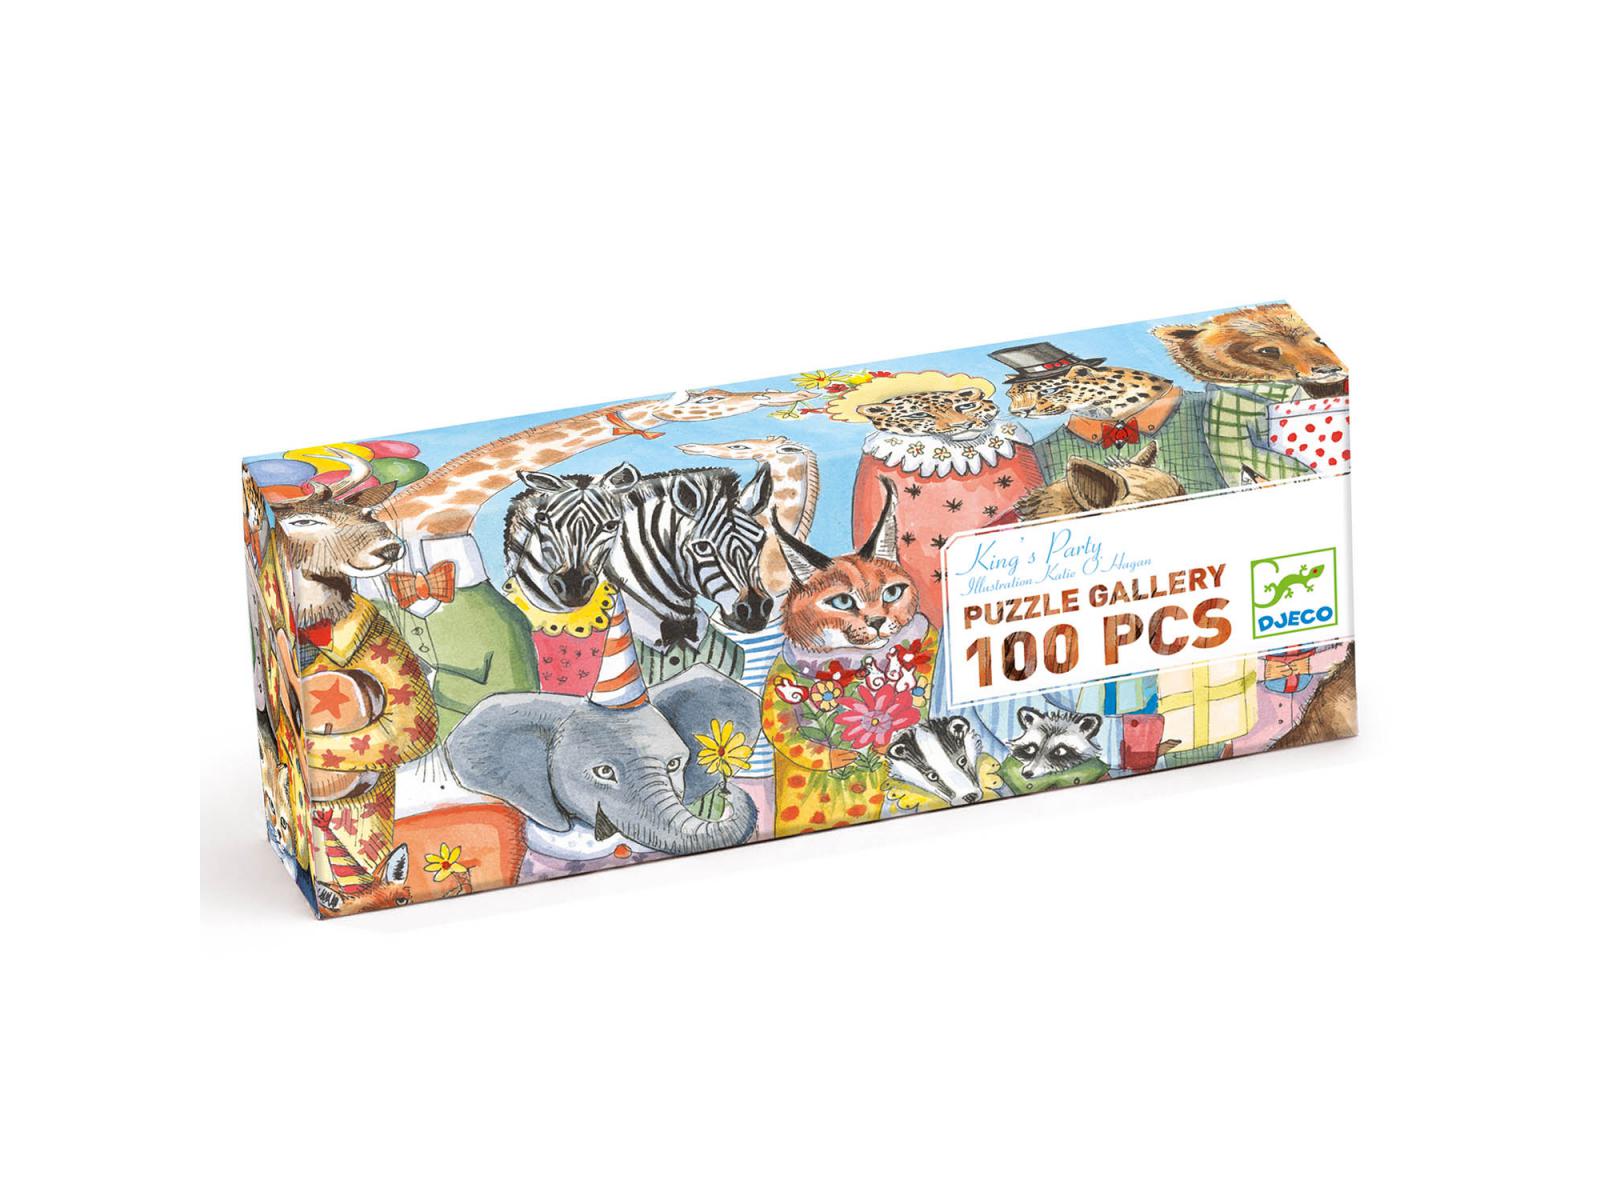 Puzzle Yokai pour les enfants de Djeco - Puzzle Gallery de 500 pièces